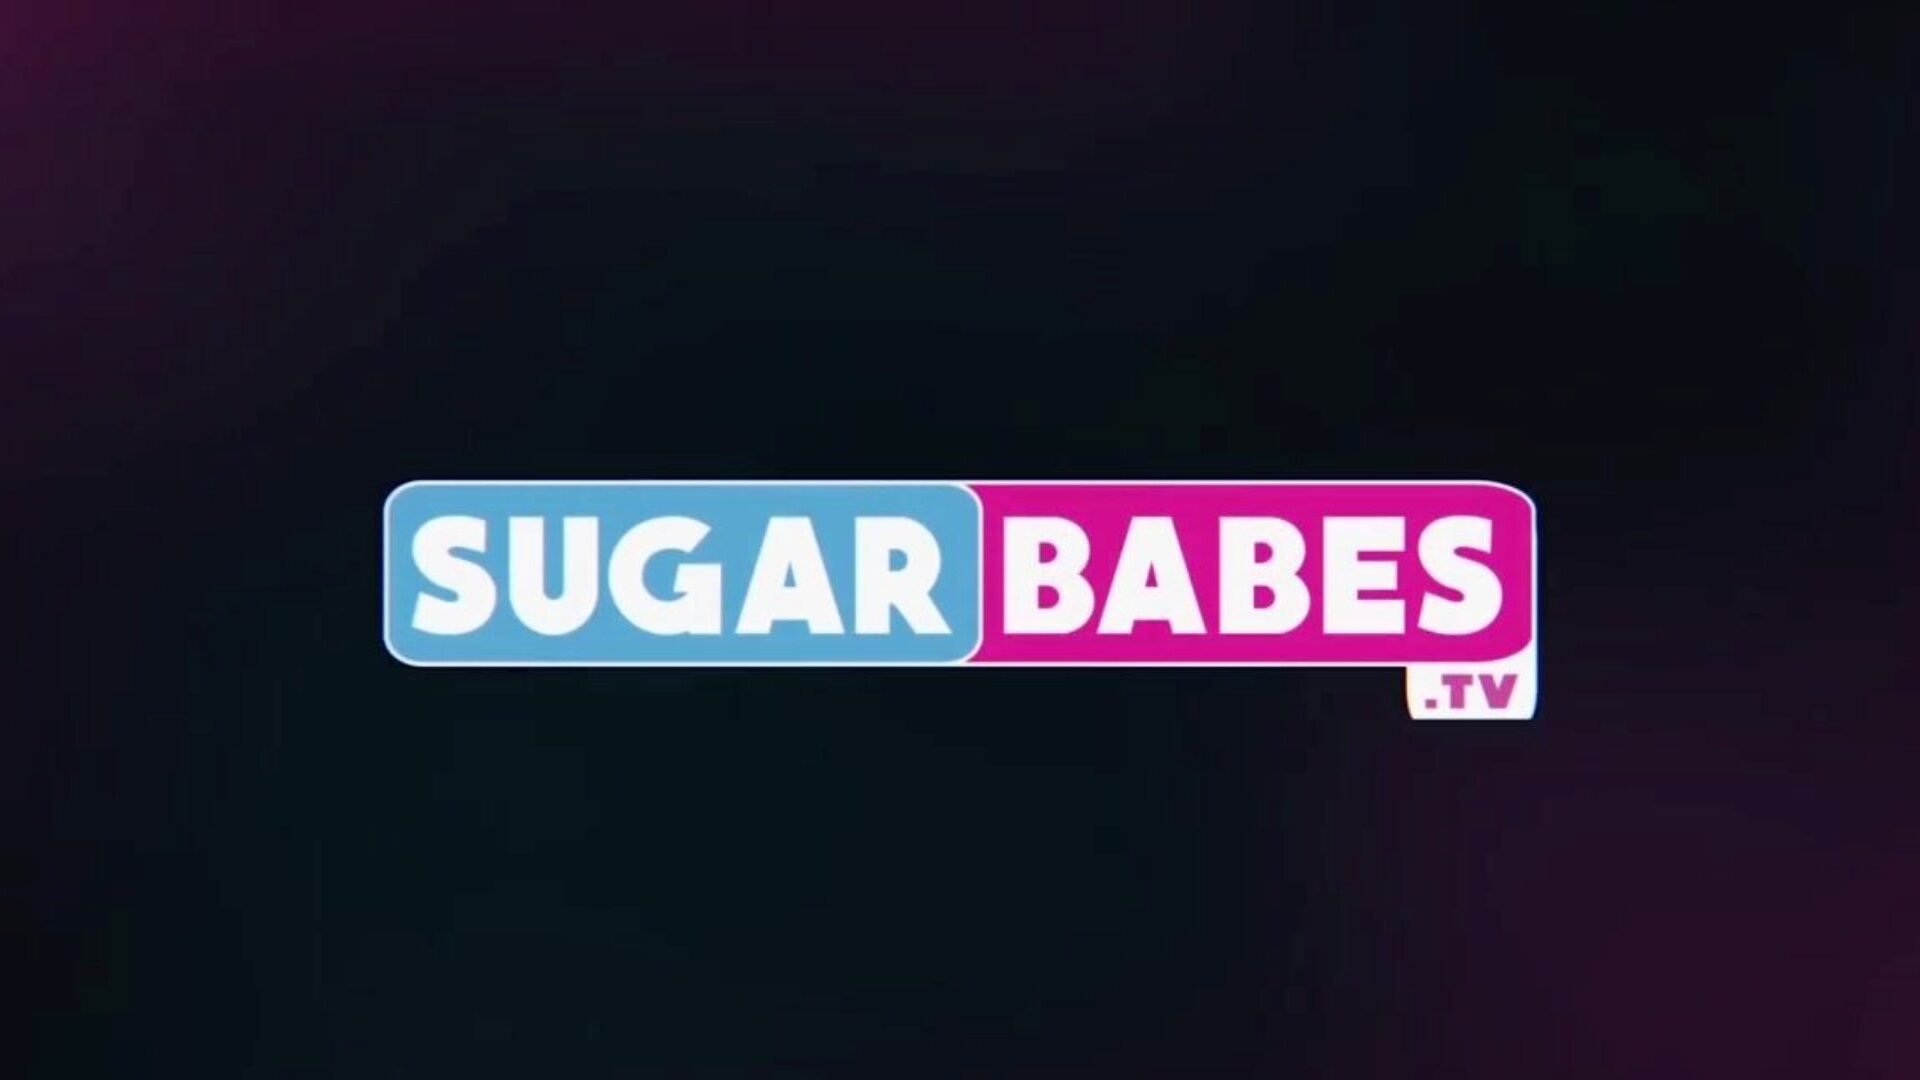 Sugarbabestv butelka, darmowe miody cukrowe tv porno hd 6b oglądaj sugarbabestv wideo butelkę na xhamster, najlepsza strona internetowa z kanałami miłosnymi w jakości HD z mnóstwem darmowych cukrowych babes tv seks lesbijski i pornografia z miłością